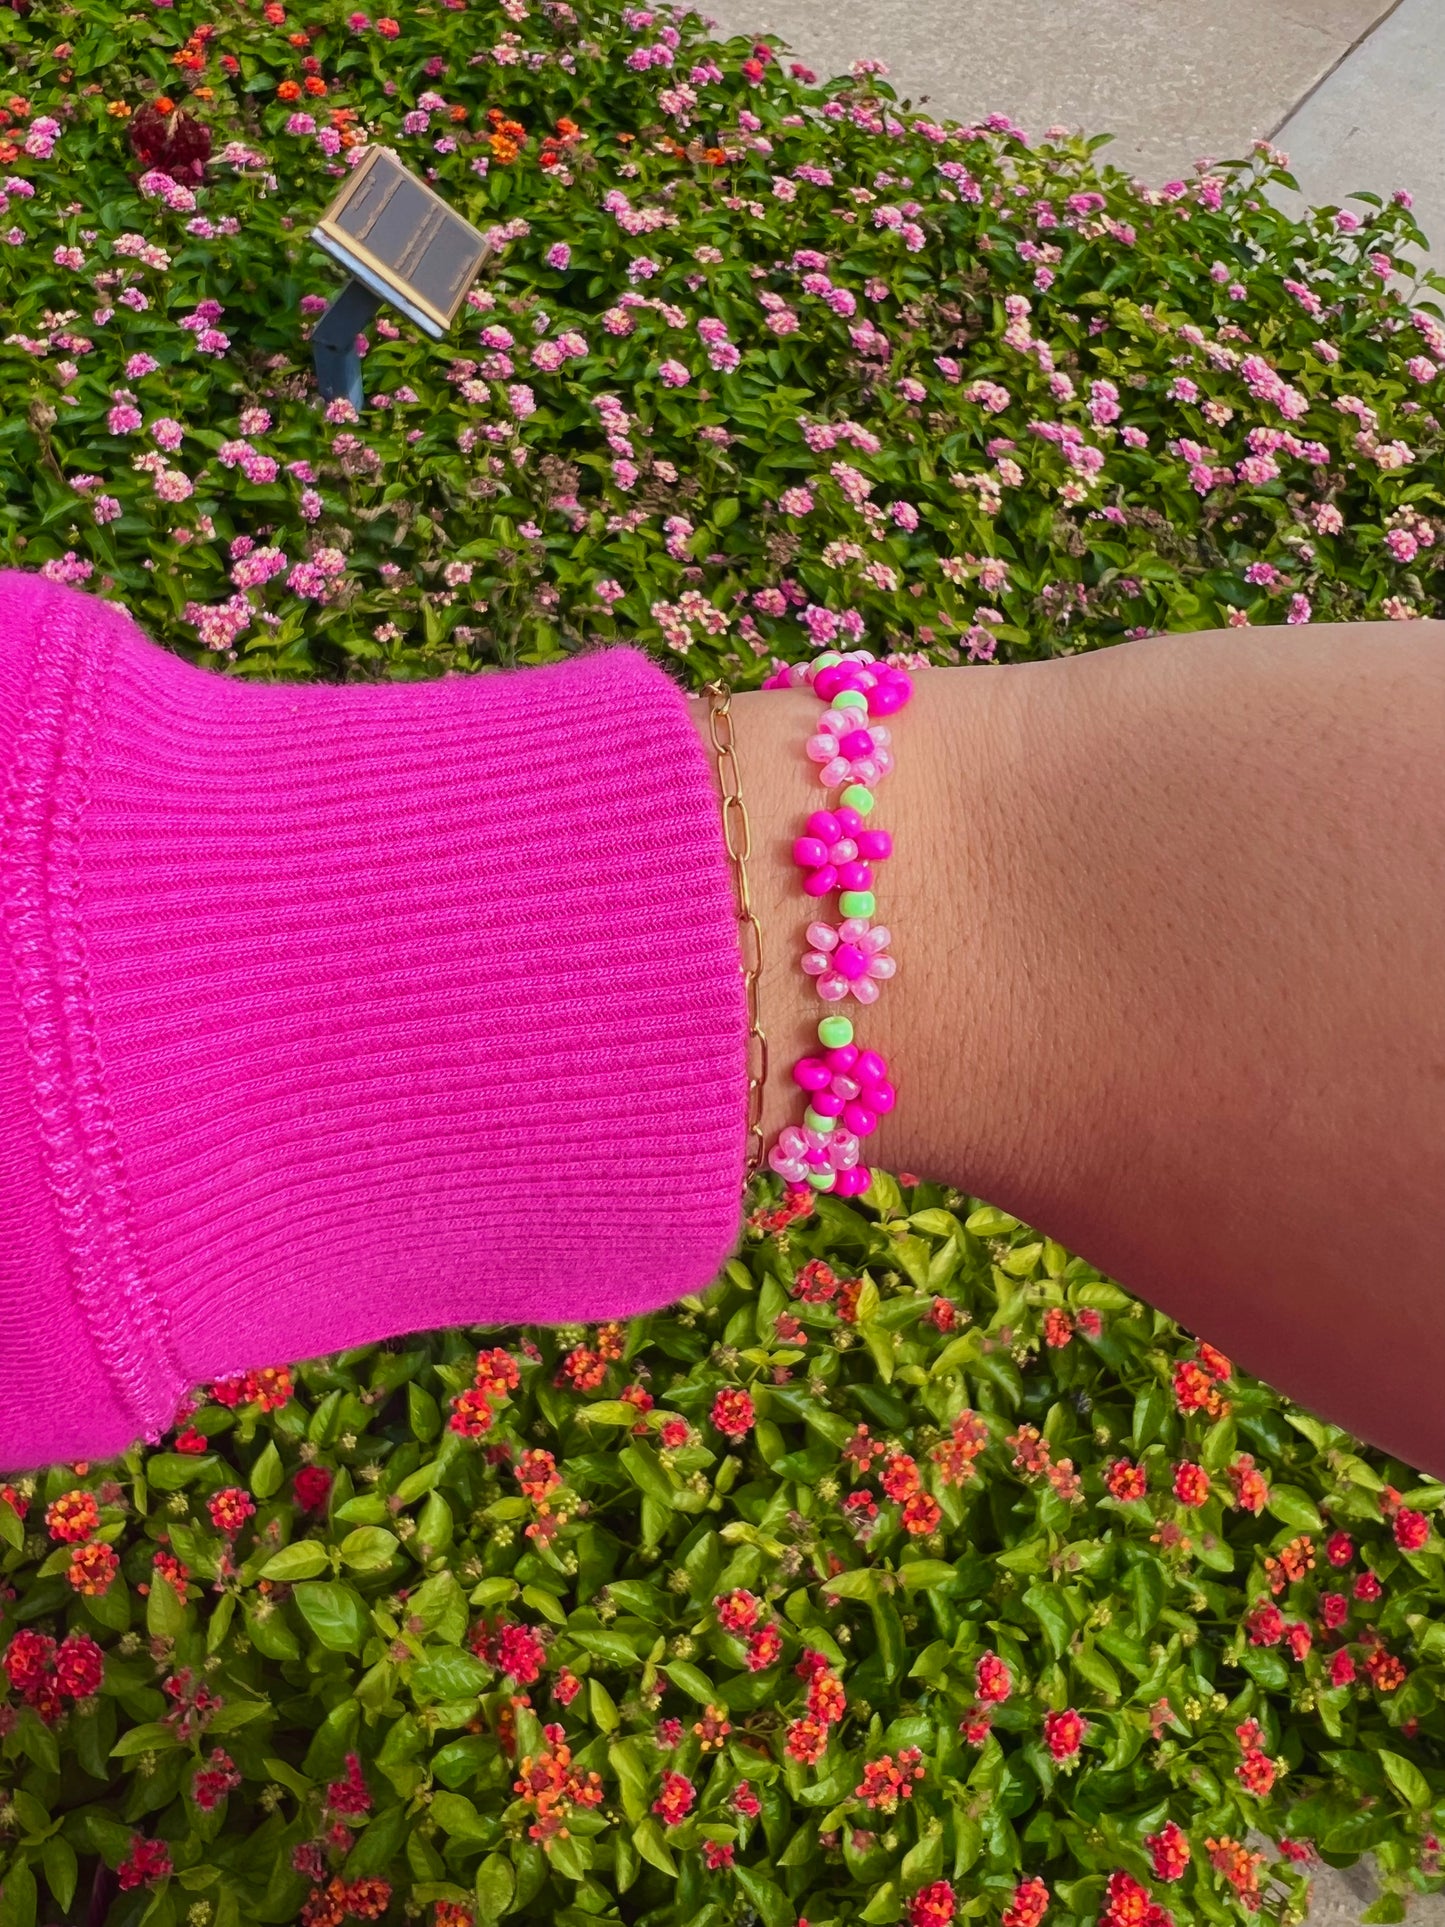 Pink Daisy Bracelet